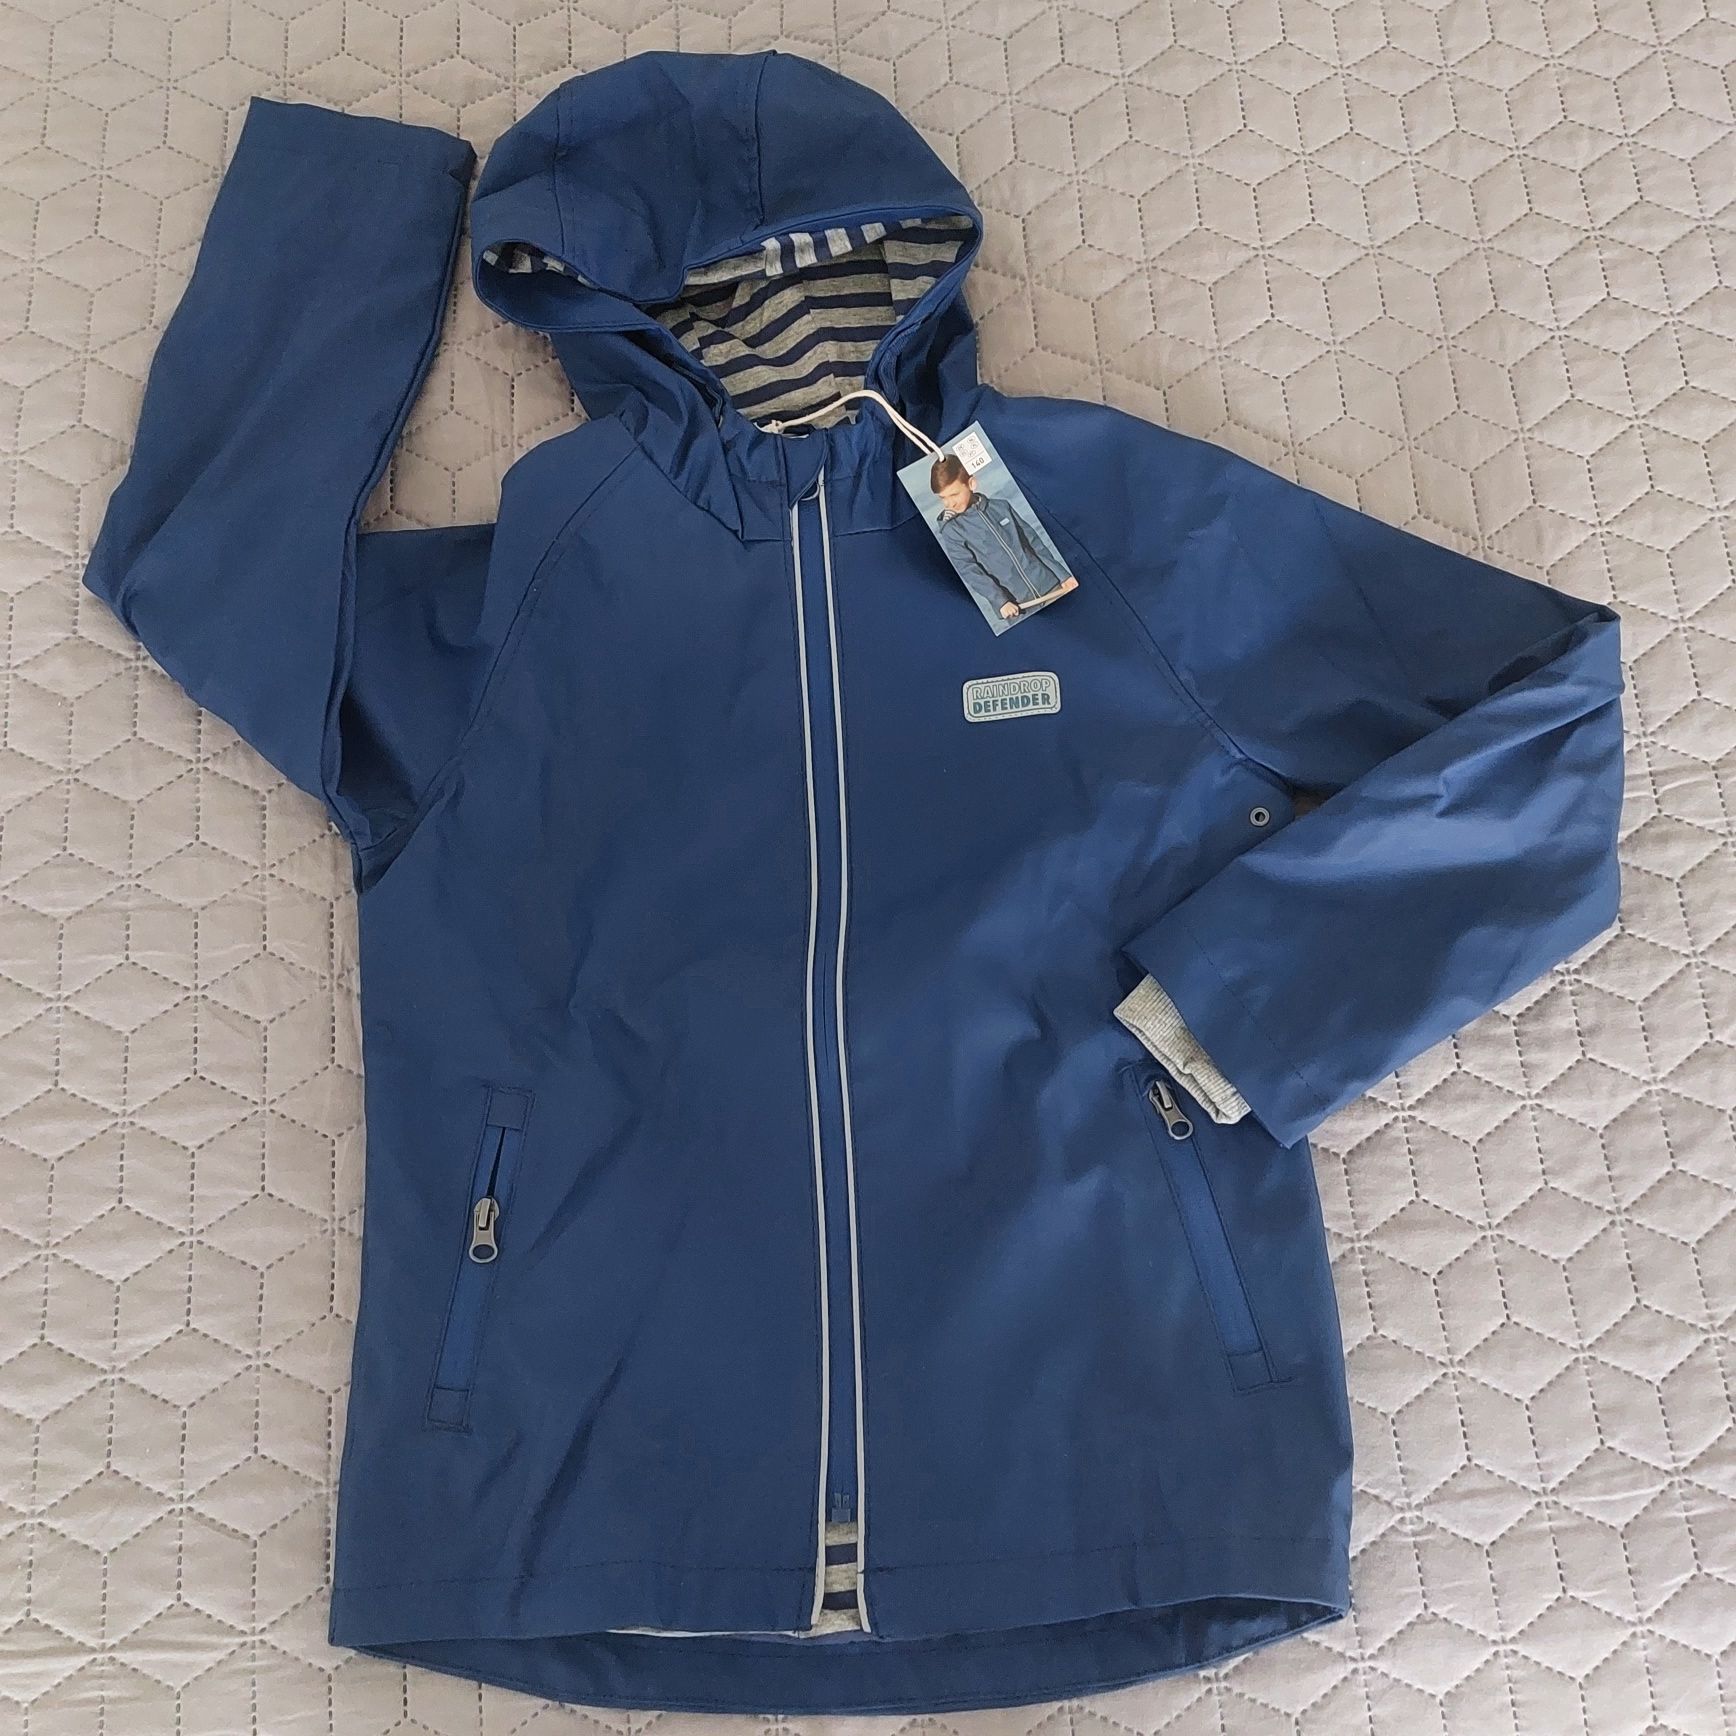 Непромокаемая куртка,дождевик фирмы Pocopiano(Германия).Рост 134